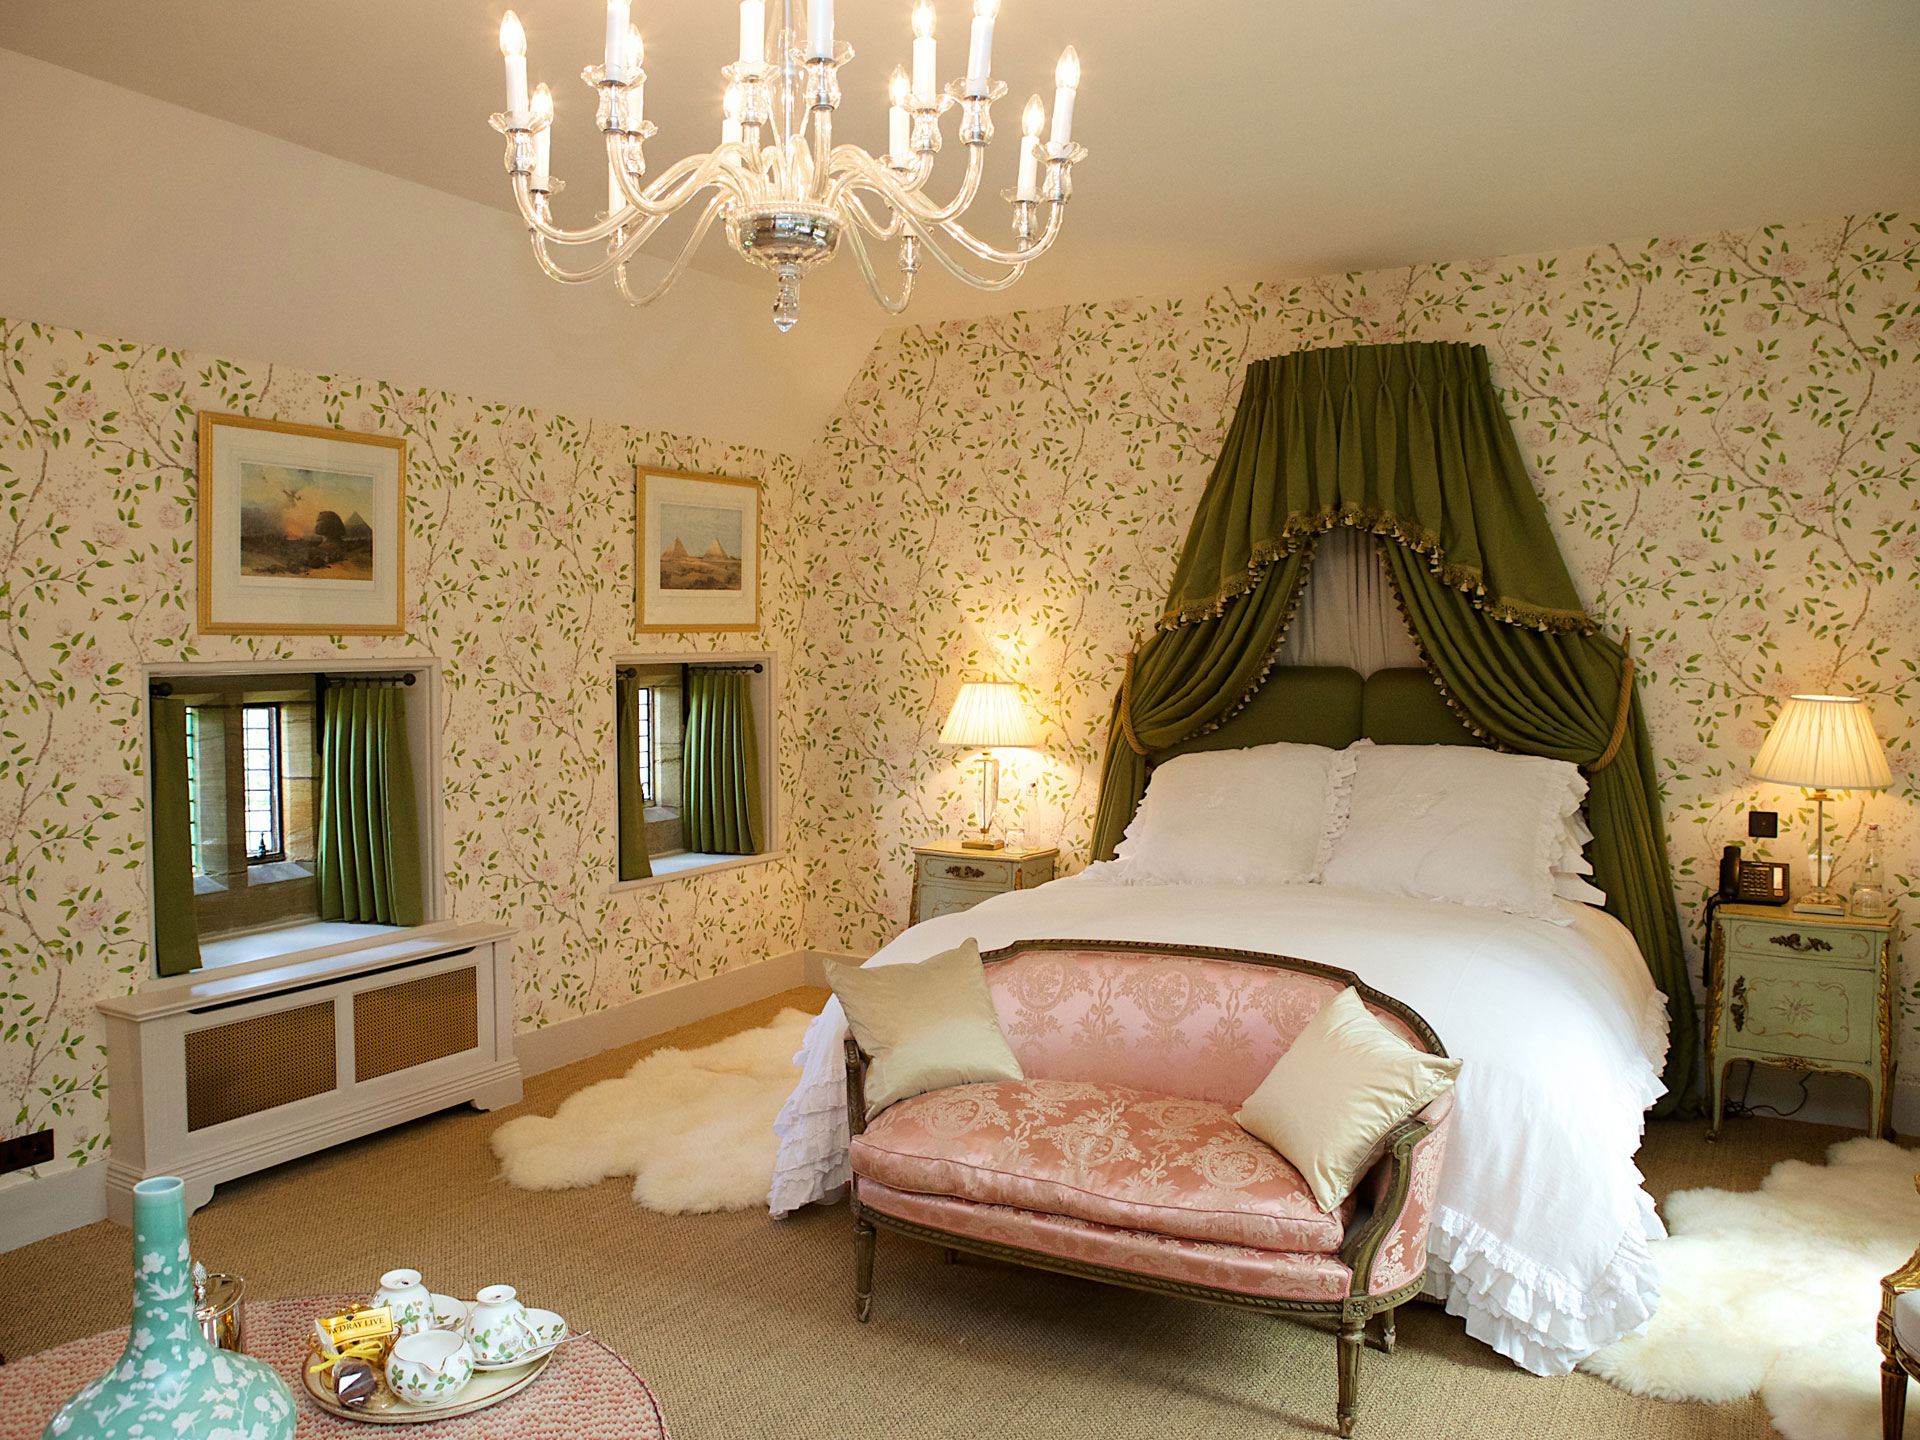 Υπνοδωμάτιο σε πράσινο σχέδιο στη χώρα